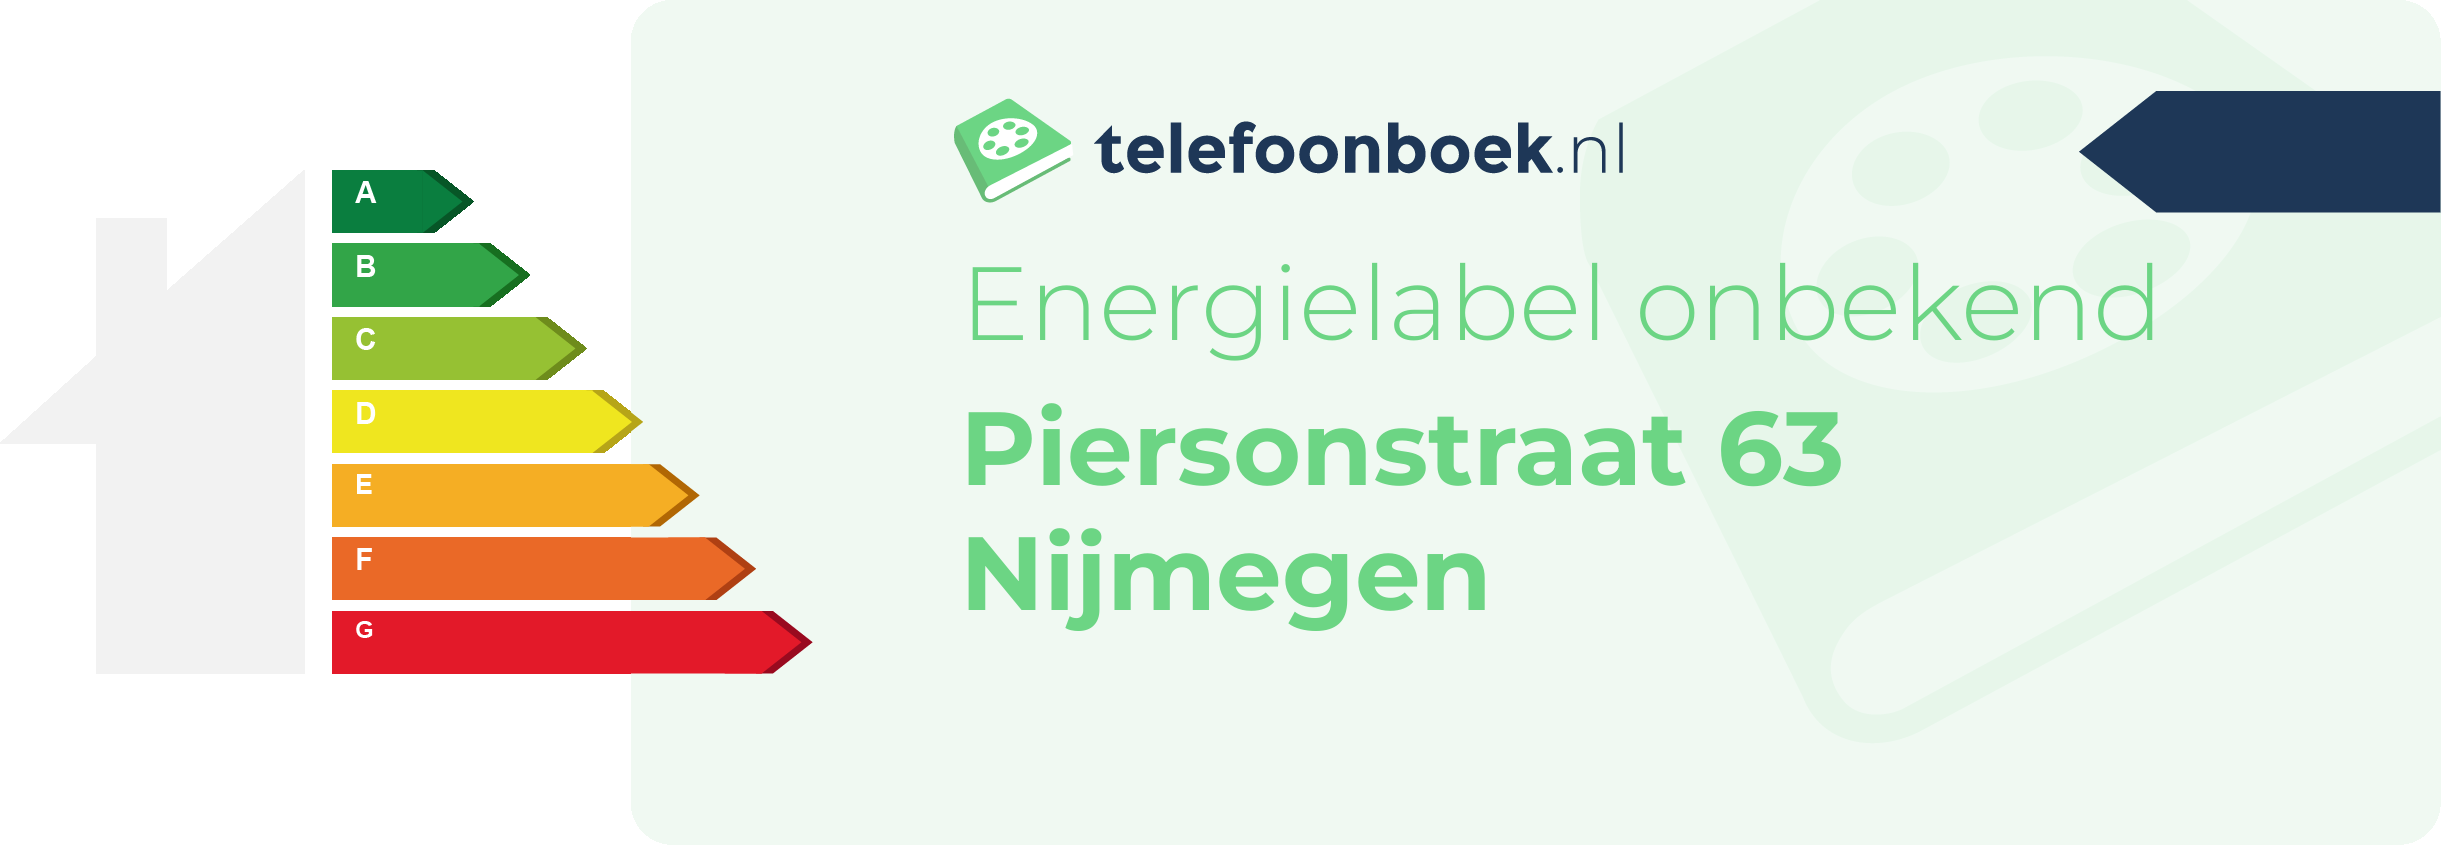 Energielabel Piersonstraat 63 Nijmegen